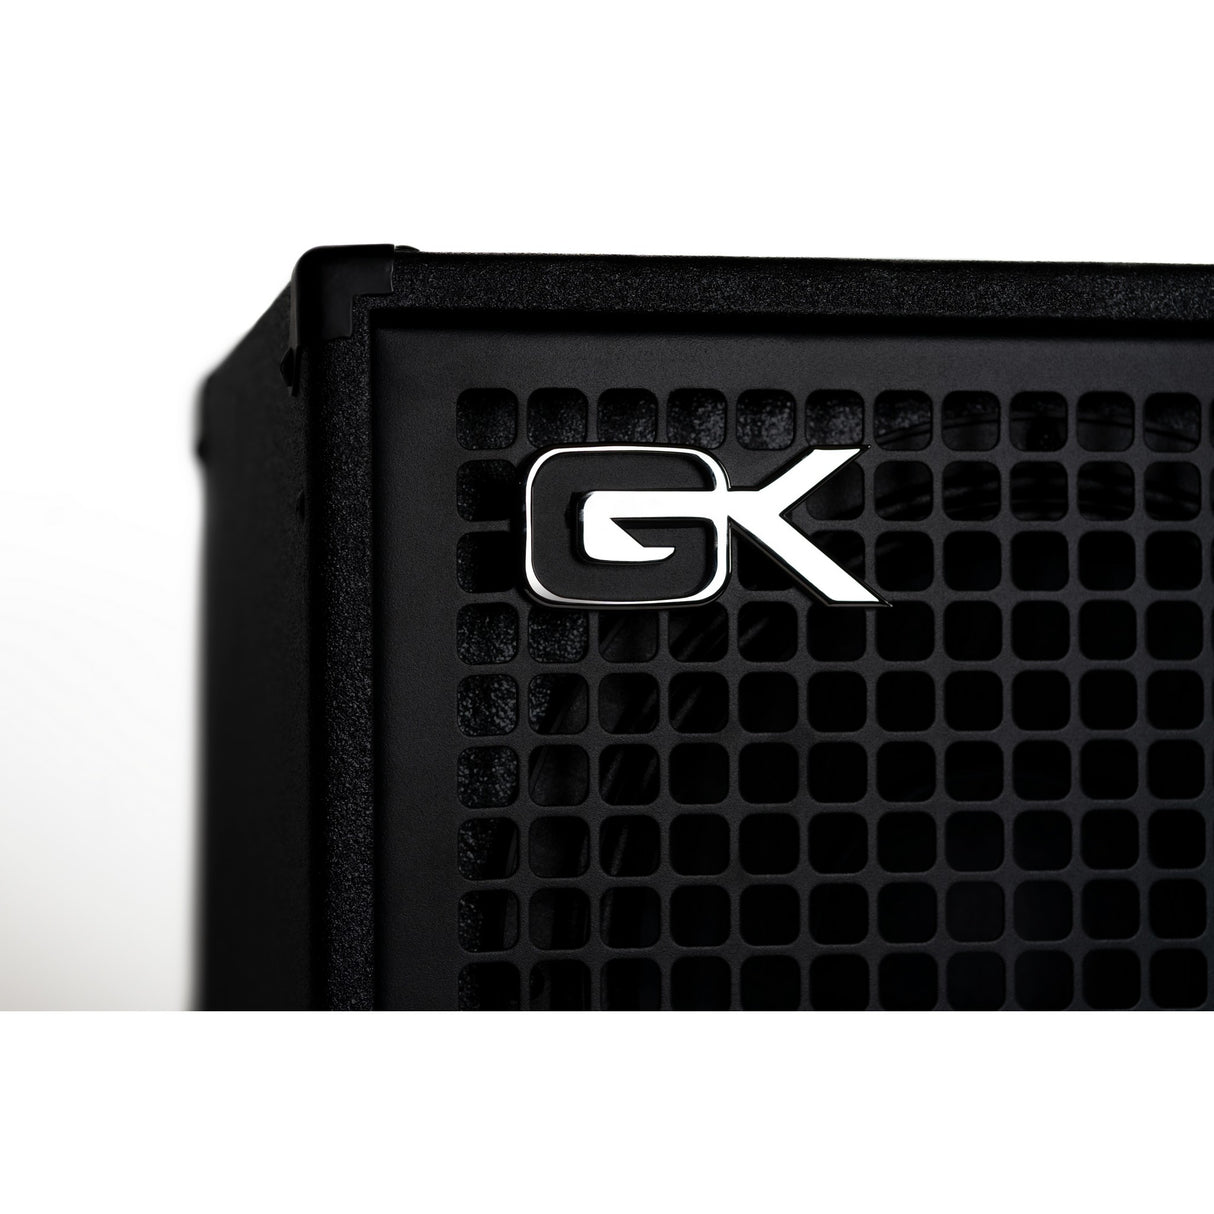 Gallien-Krueger Fusion 112 800W 1 x 12-Inch Ultralight Bass Combo Amp